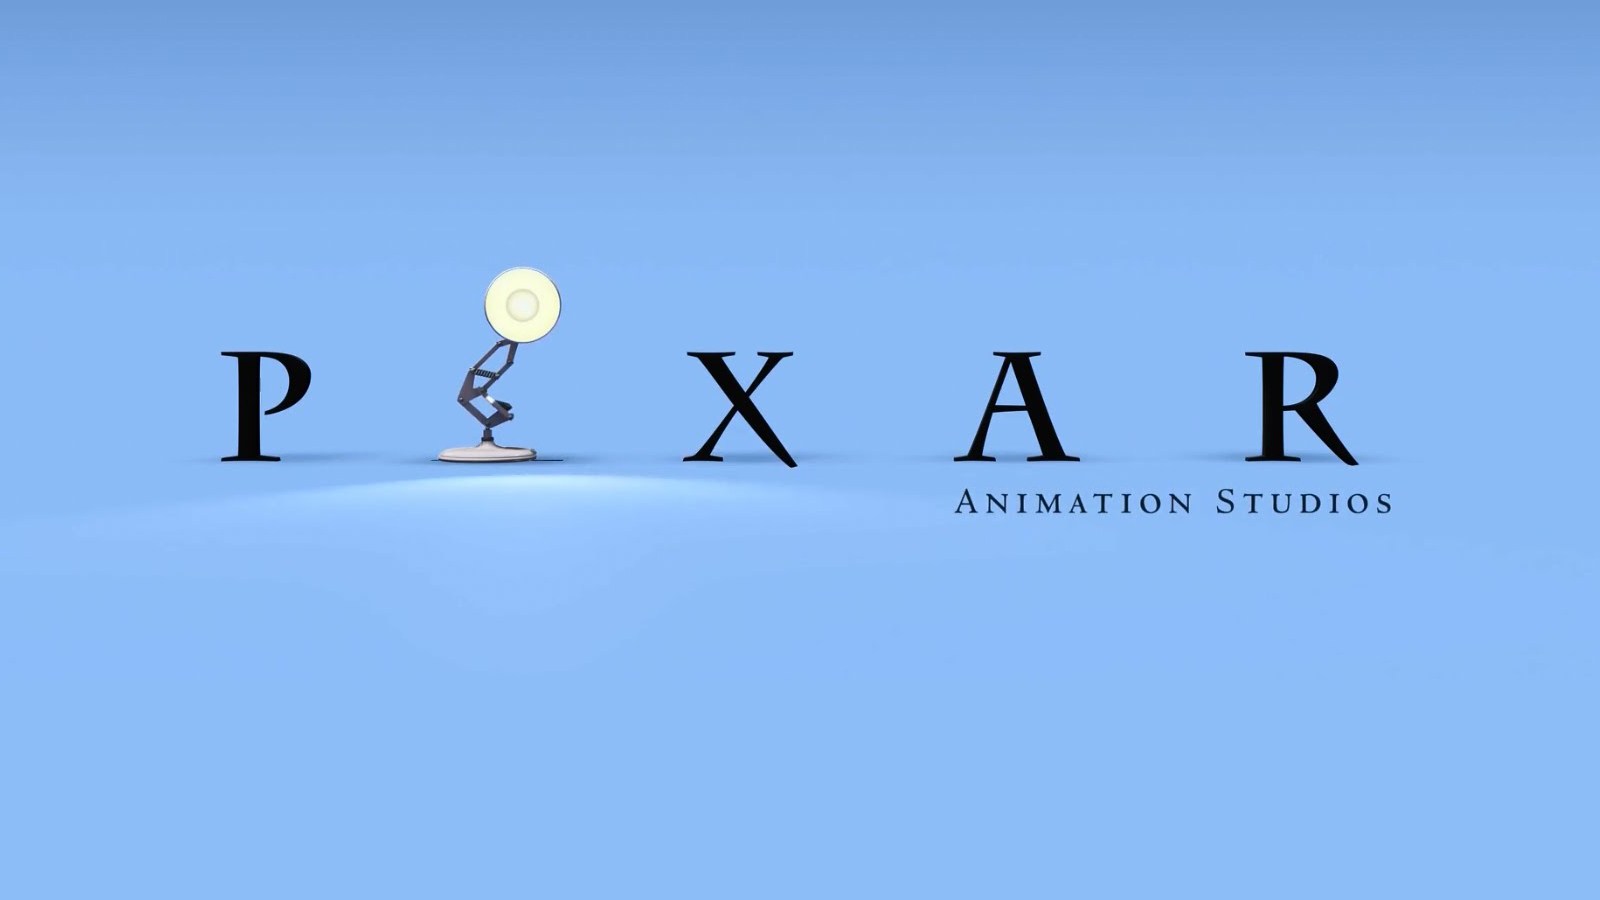 Melhor filme já produzido pela Pixar? : r/brasil